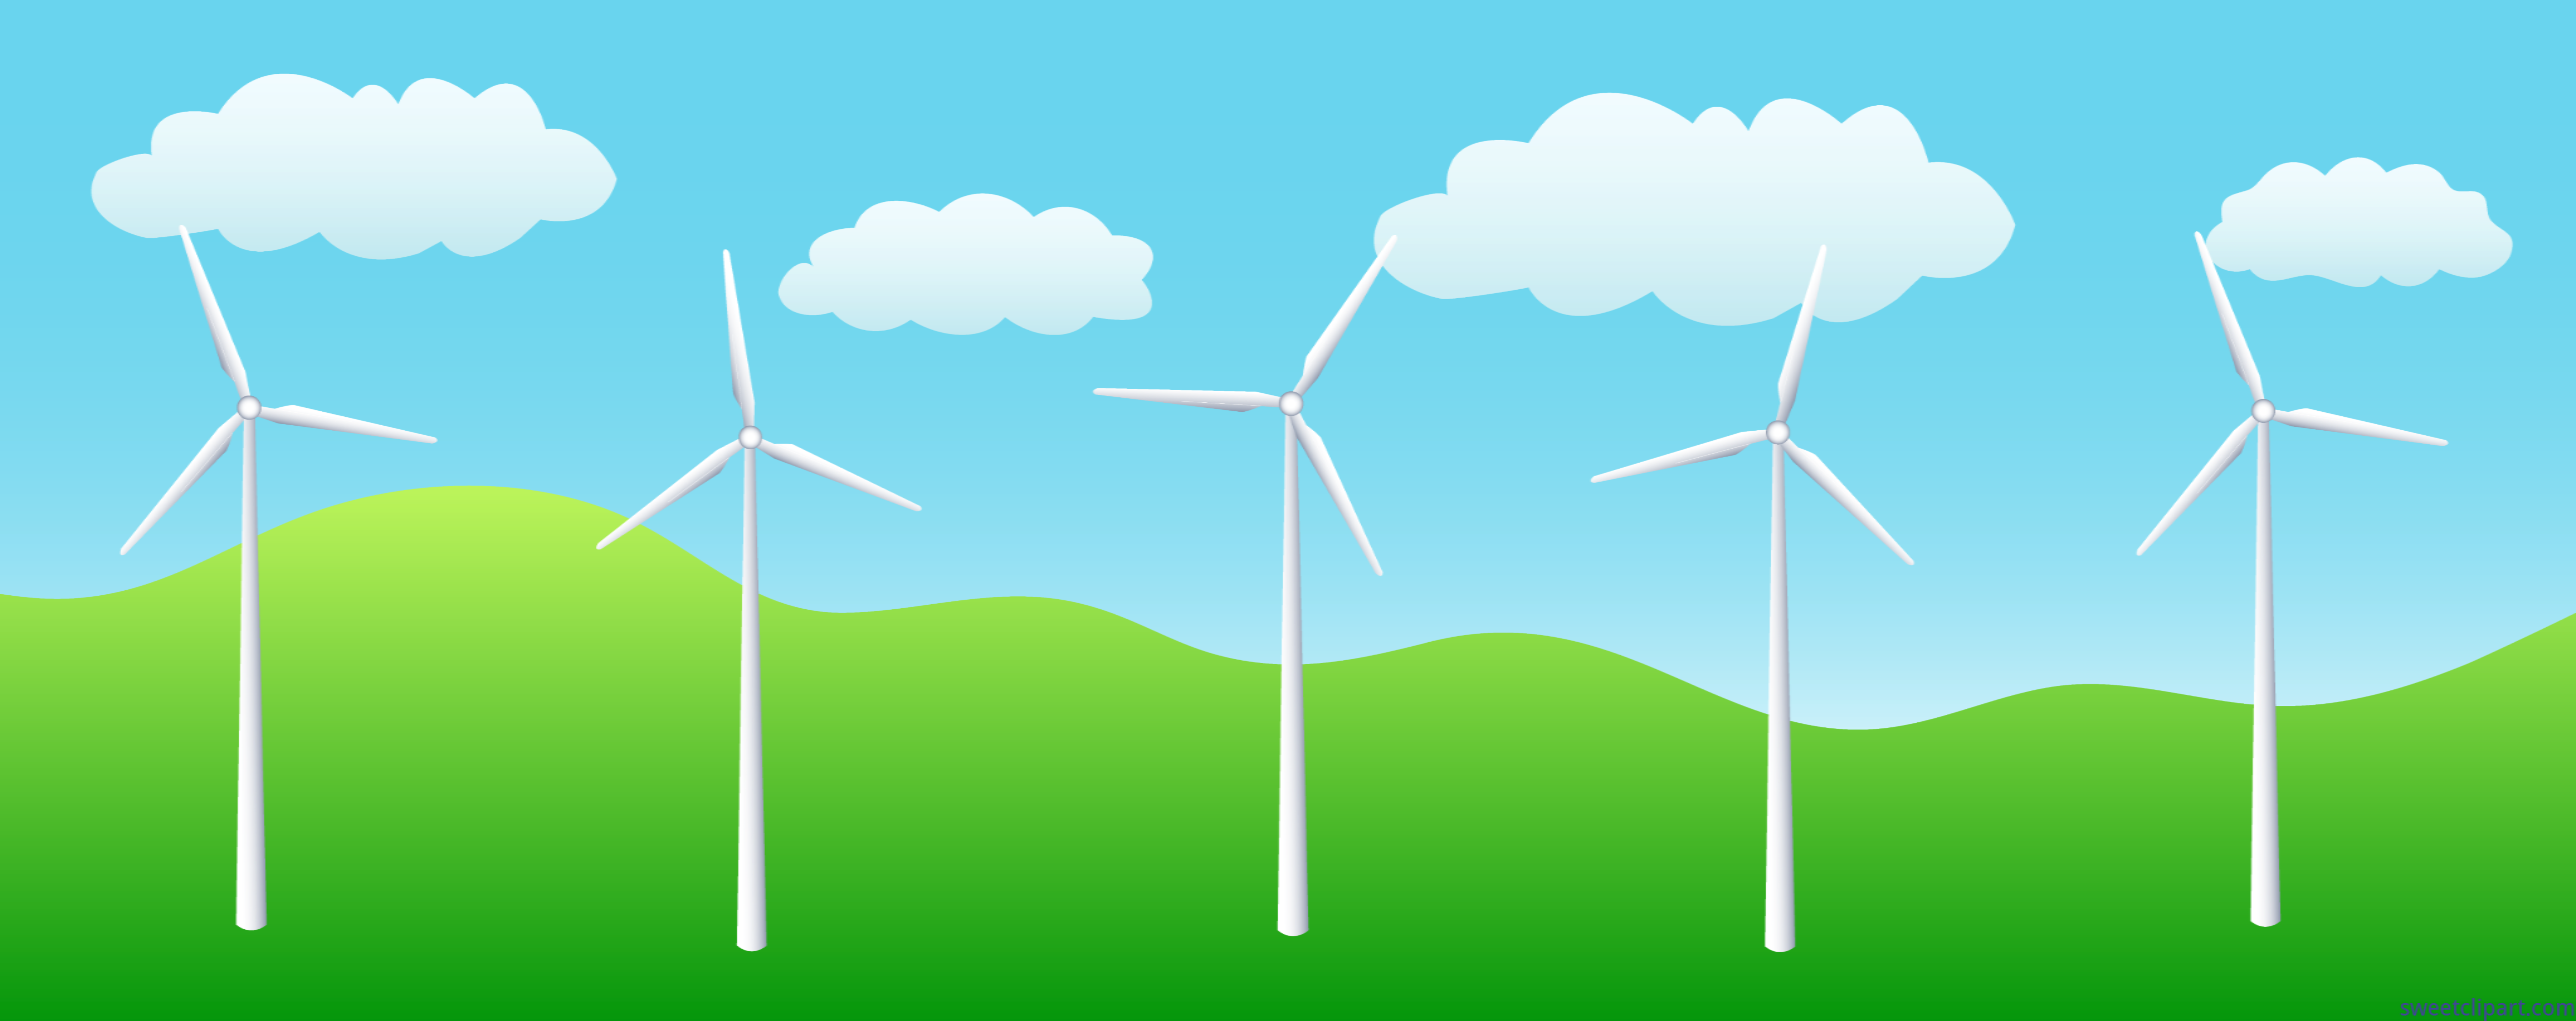 ... free wind turbine clip art; windmills on hill clip art ...